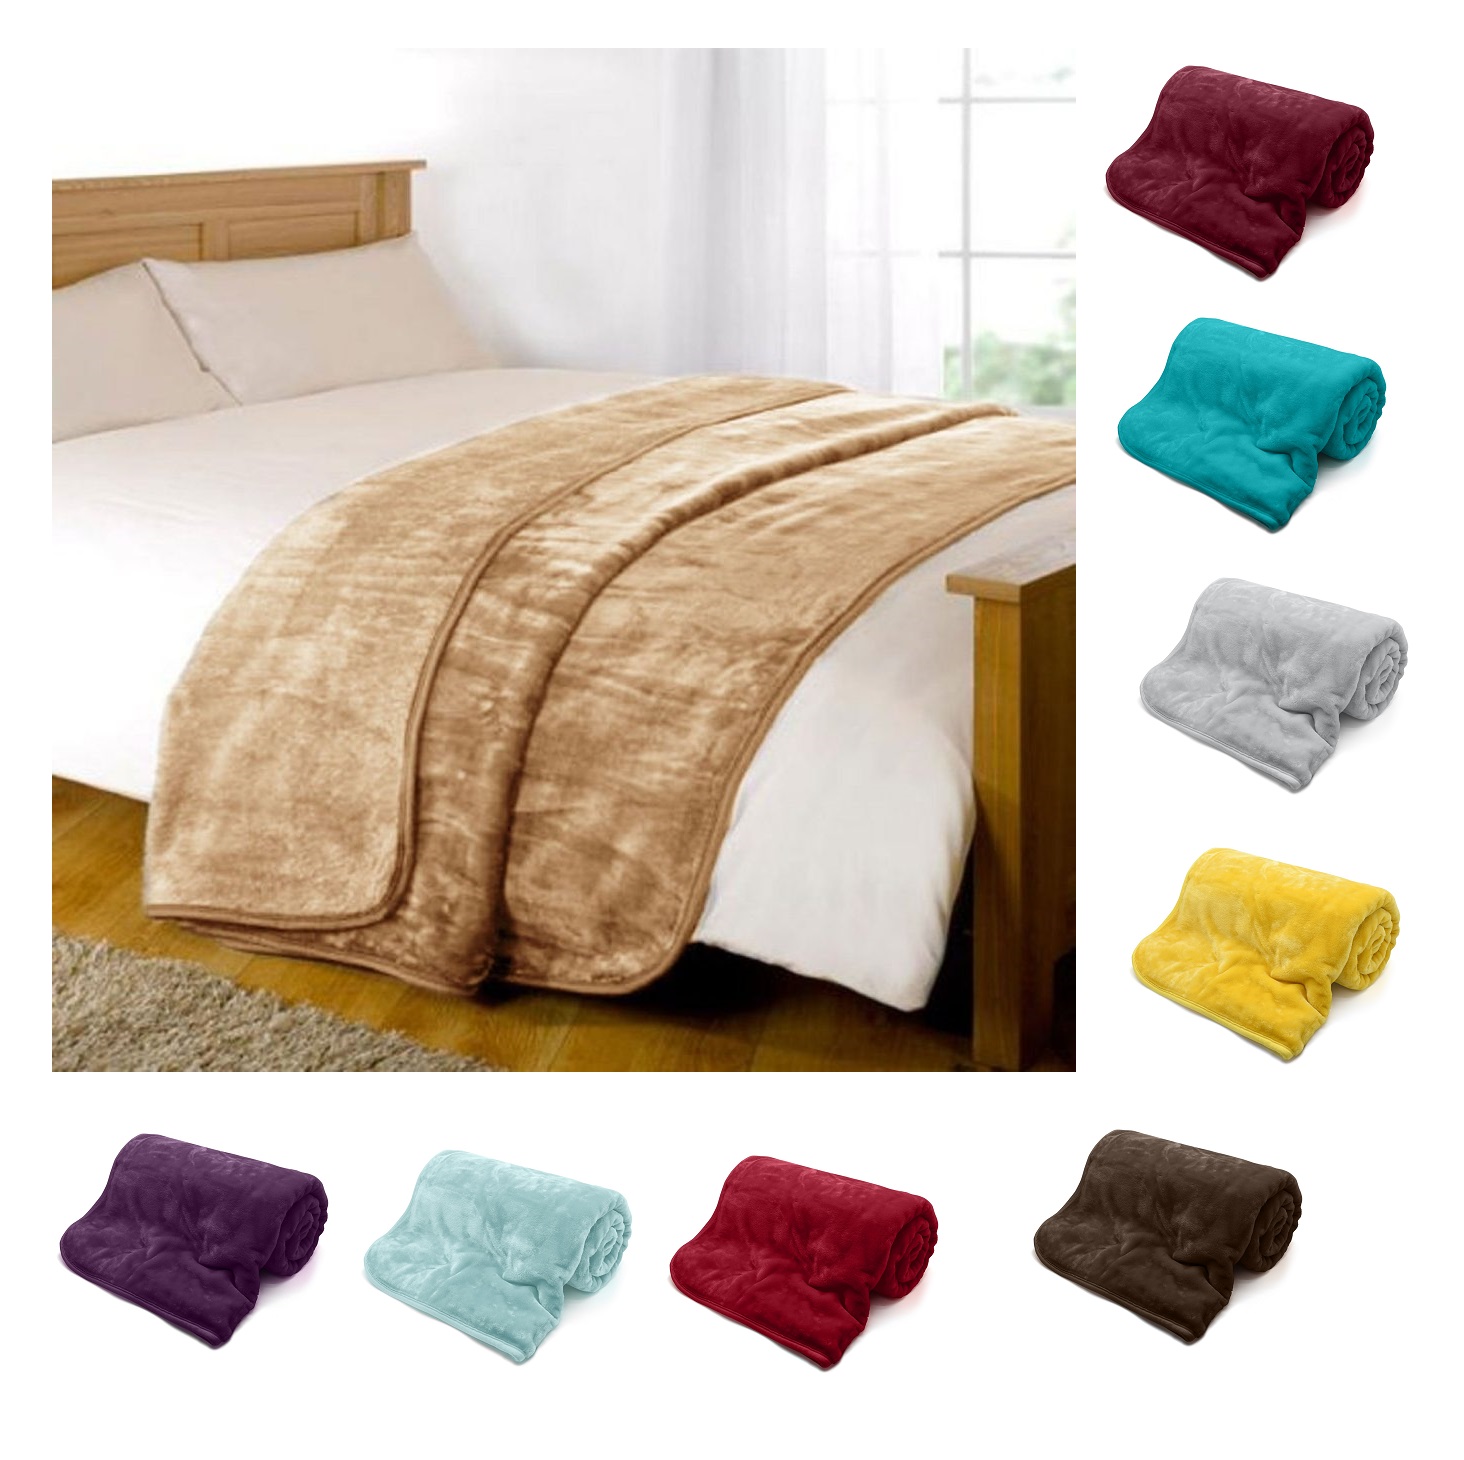 Faux Fur Throw Fleece Blanket Mink Sofa Bed Luxury Single Double King Size 